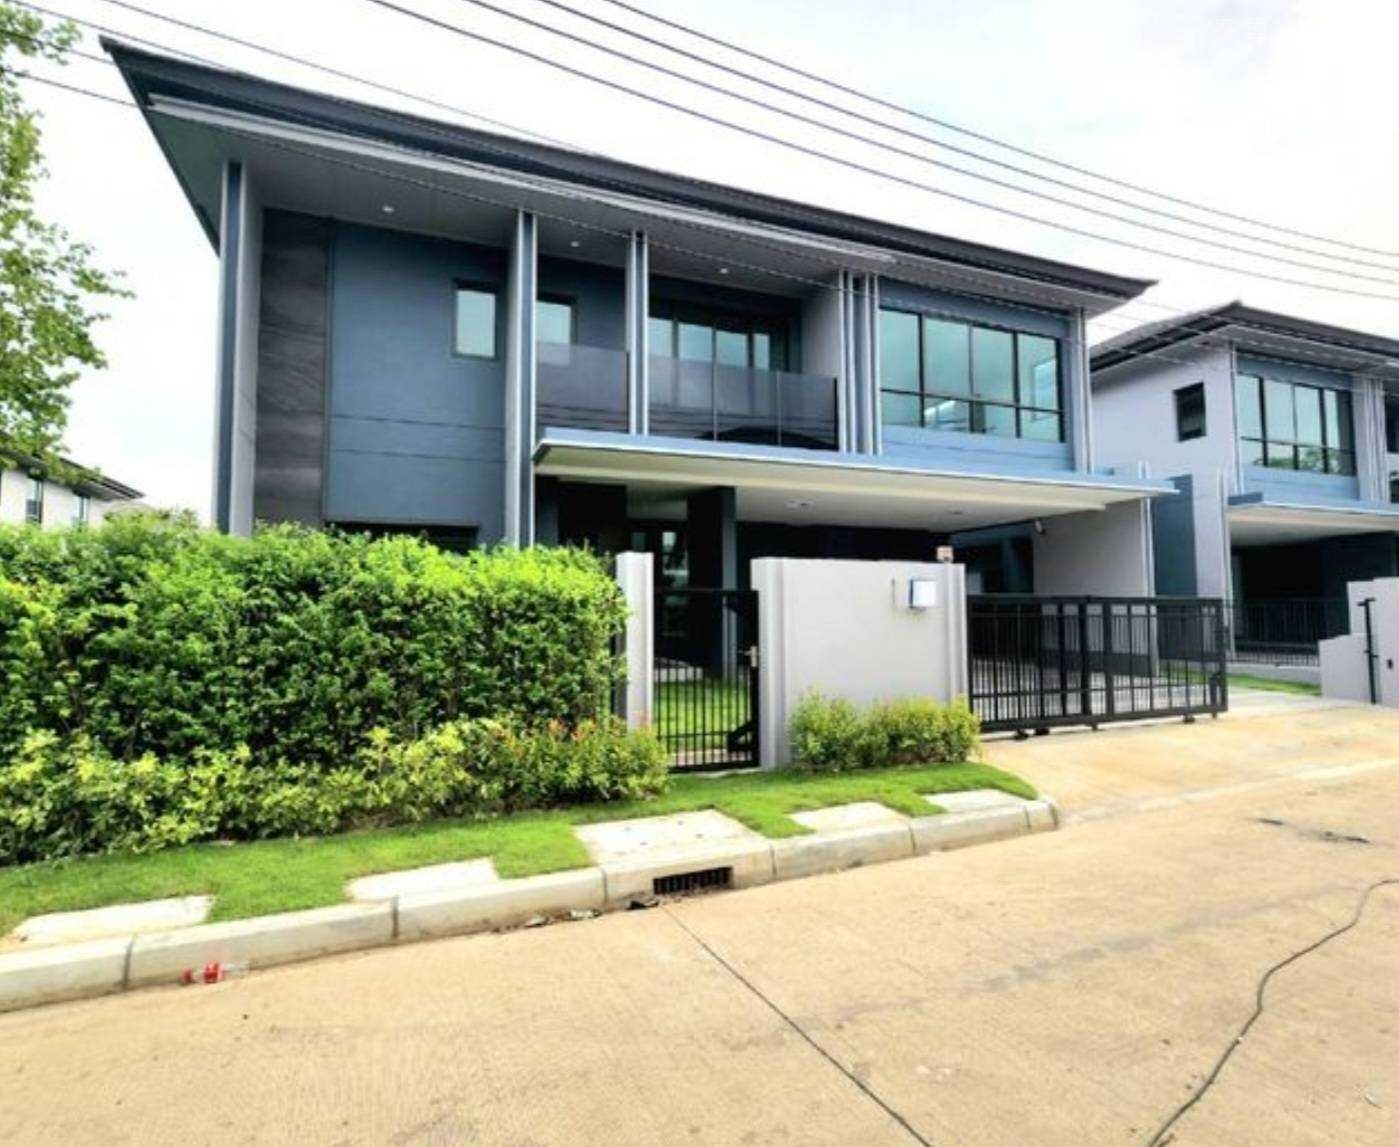 Setthasiri krungthep kreetha 2 别墅出售 4卧294平米 2650万泰铢